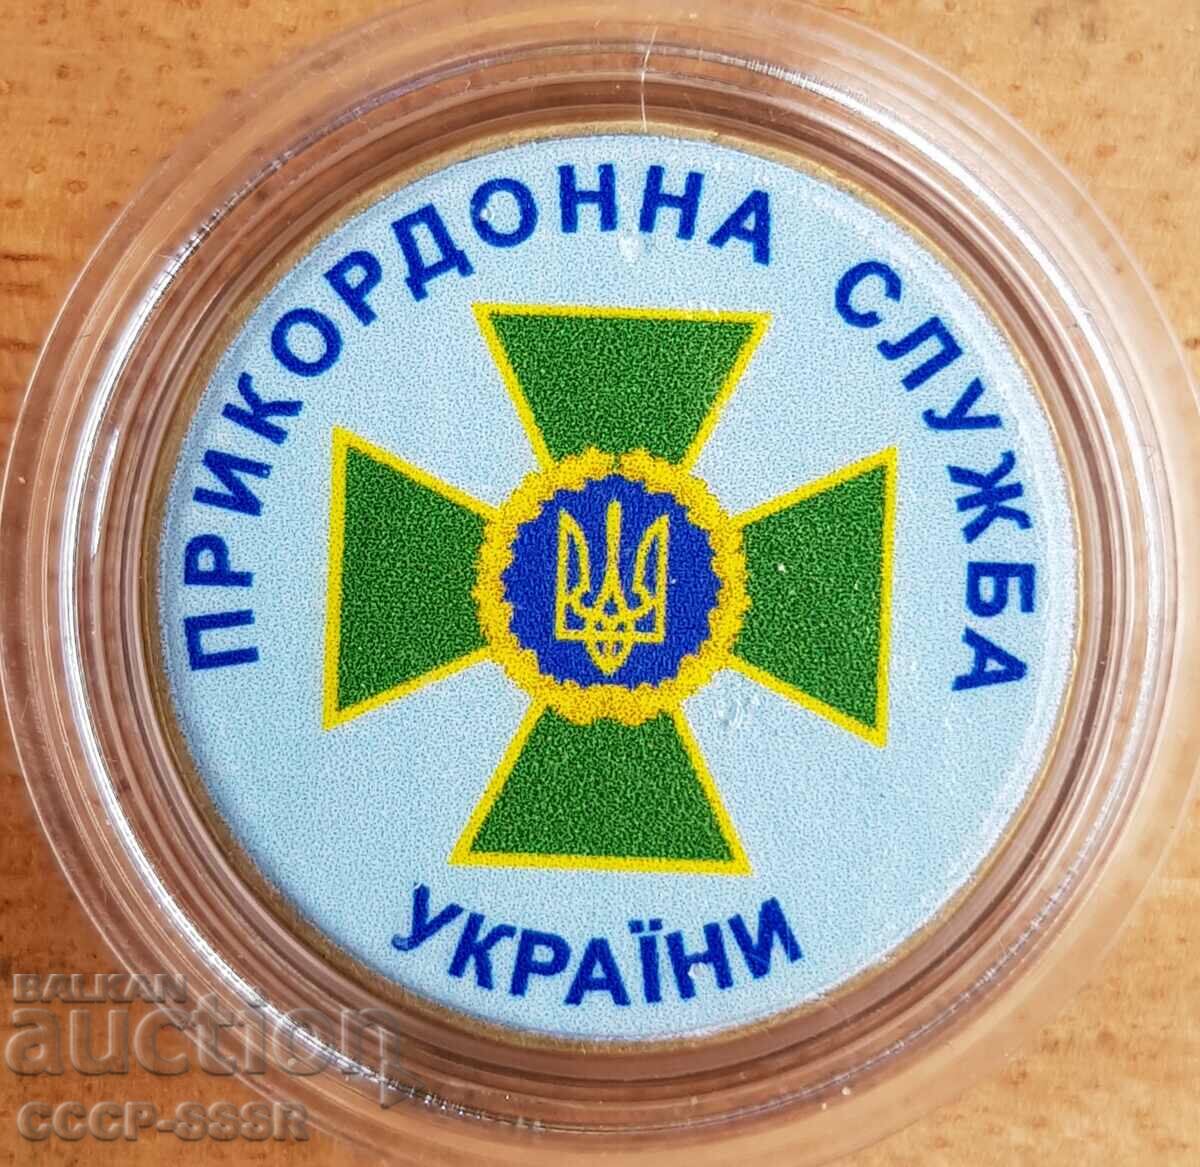 Ουκρανία 1 hryvnia, Συνοριακή Υπηρεσία Ουκρανίας, έκδοση ορίου